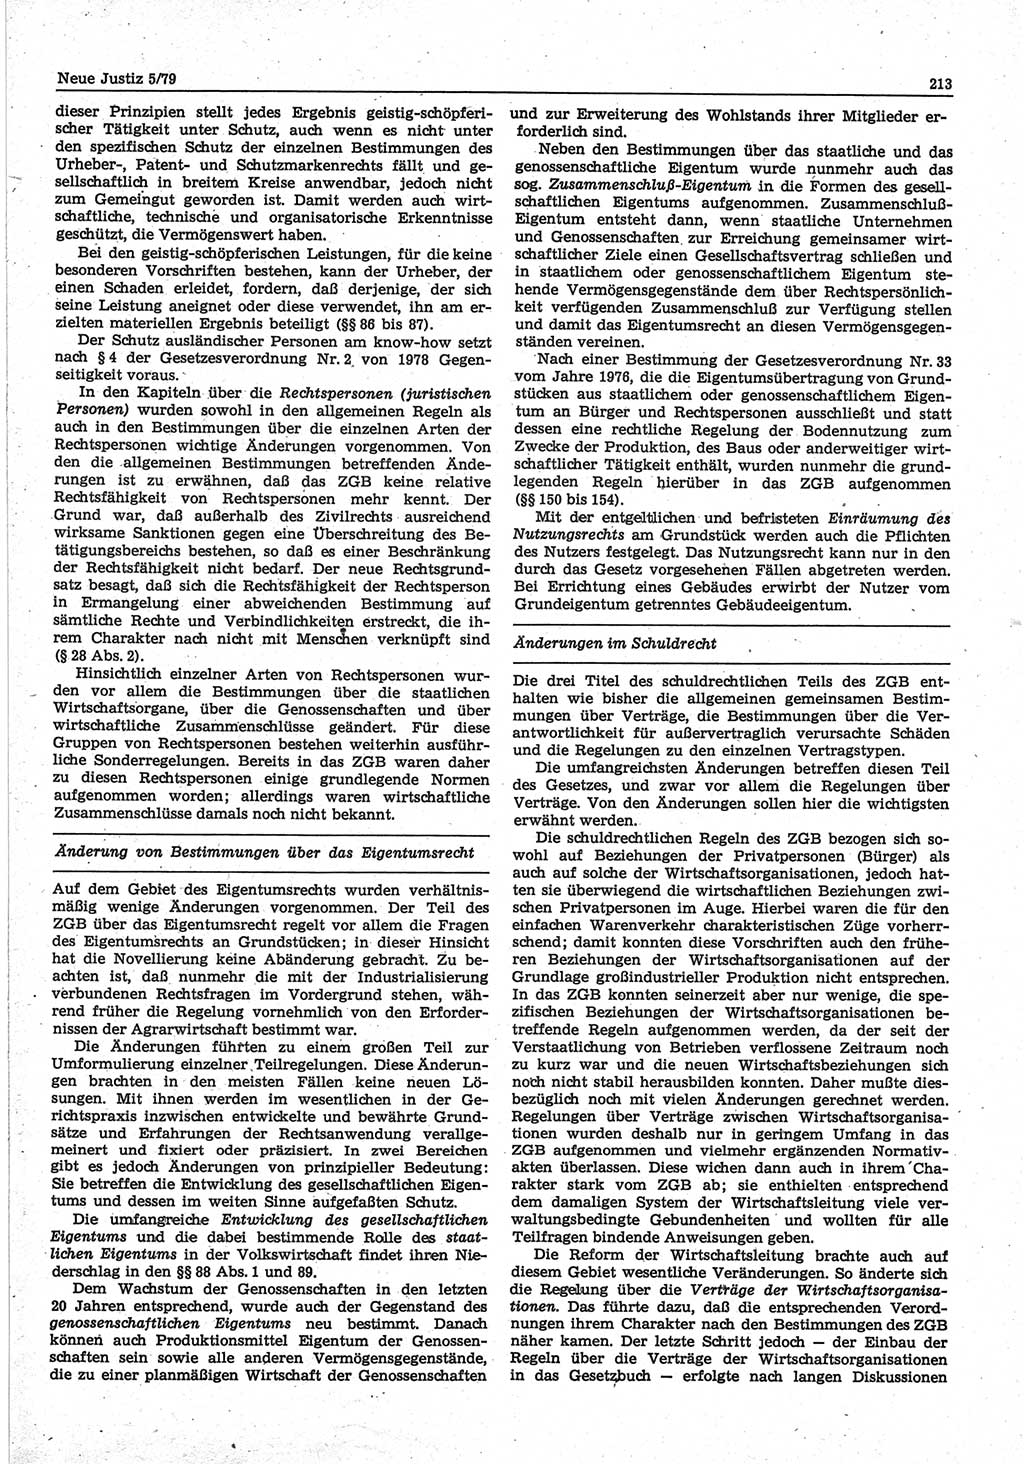 Neue Justiz (NJ), Zeitschrift für sozialistisches Recht und Gesetzlichkeit [Deutsche Demokratische Republik (DDR)], 33. Jahrgang 1979, Seite 213 (NJ DDR 1979, S. 213)